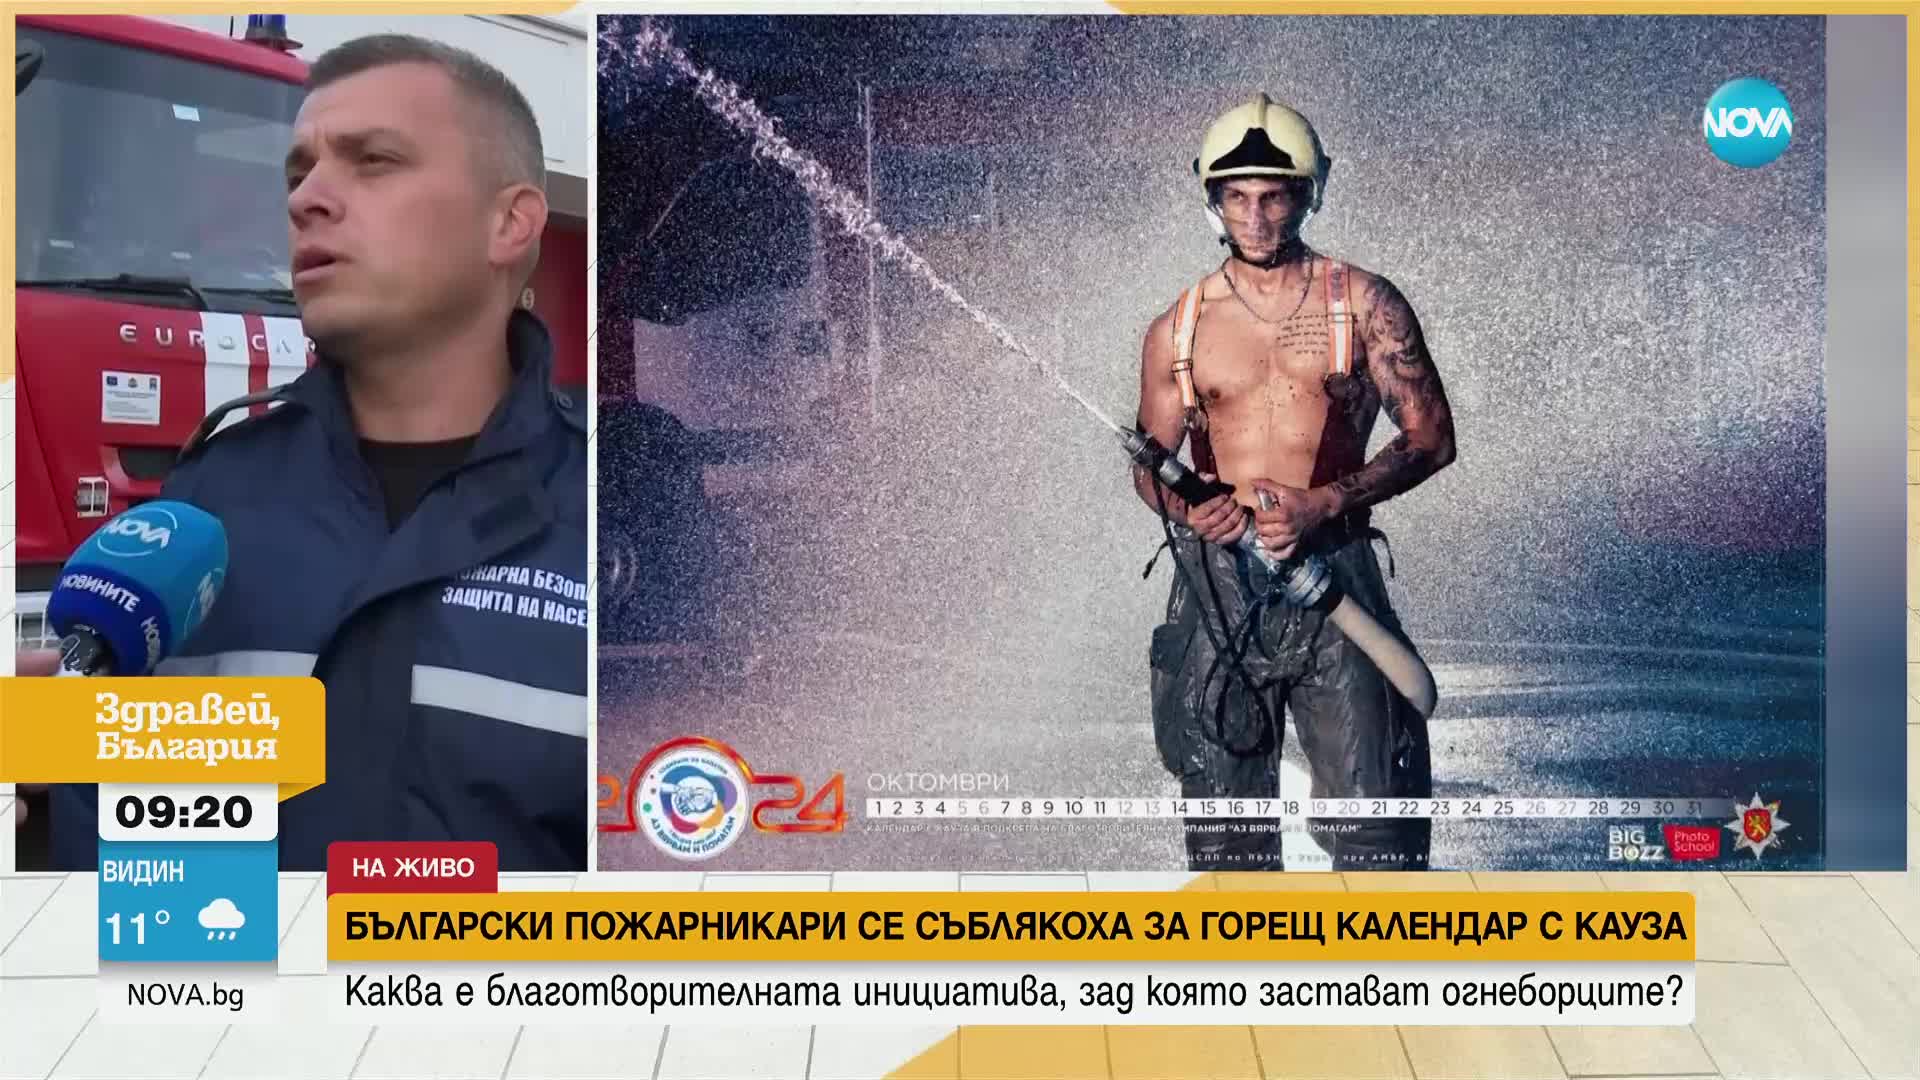 Български пожарникари се съблякоха за горещ календар с благотворителна кауза